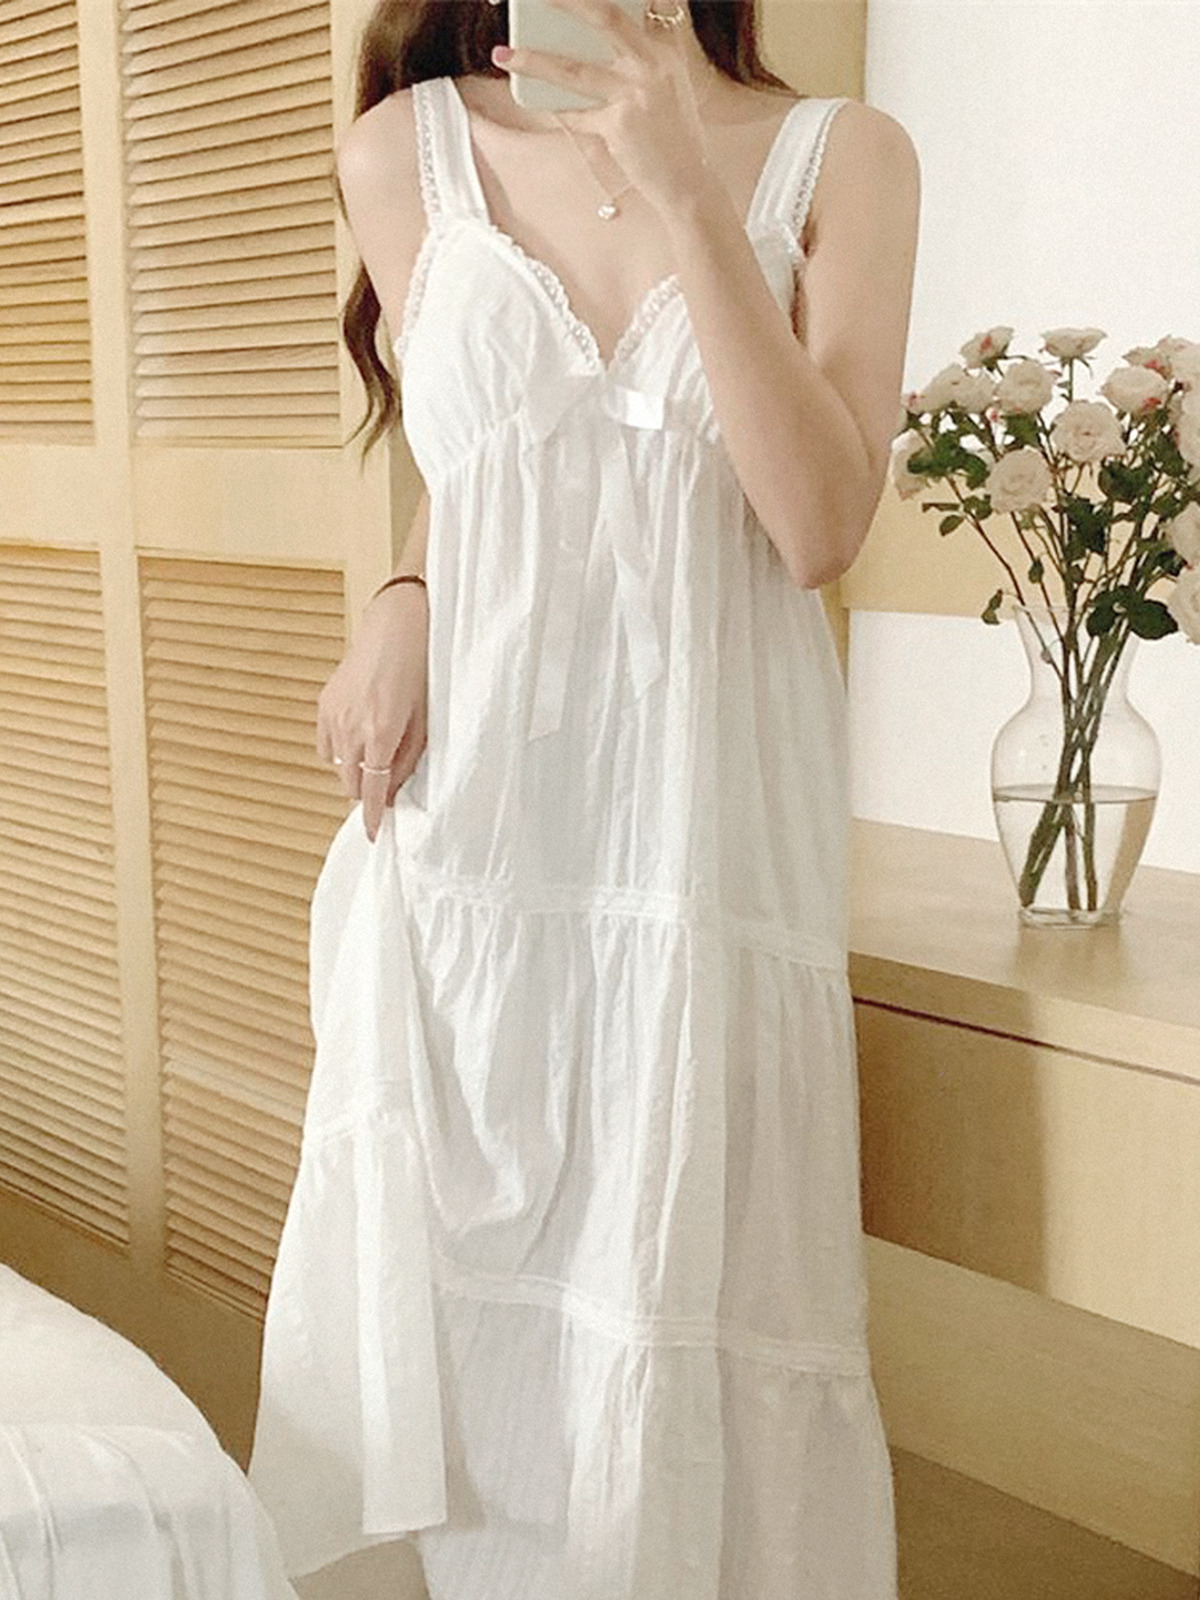 여자 원피스 잠옷 홈웨어 밴딩 파자마 LDCT017